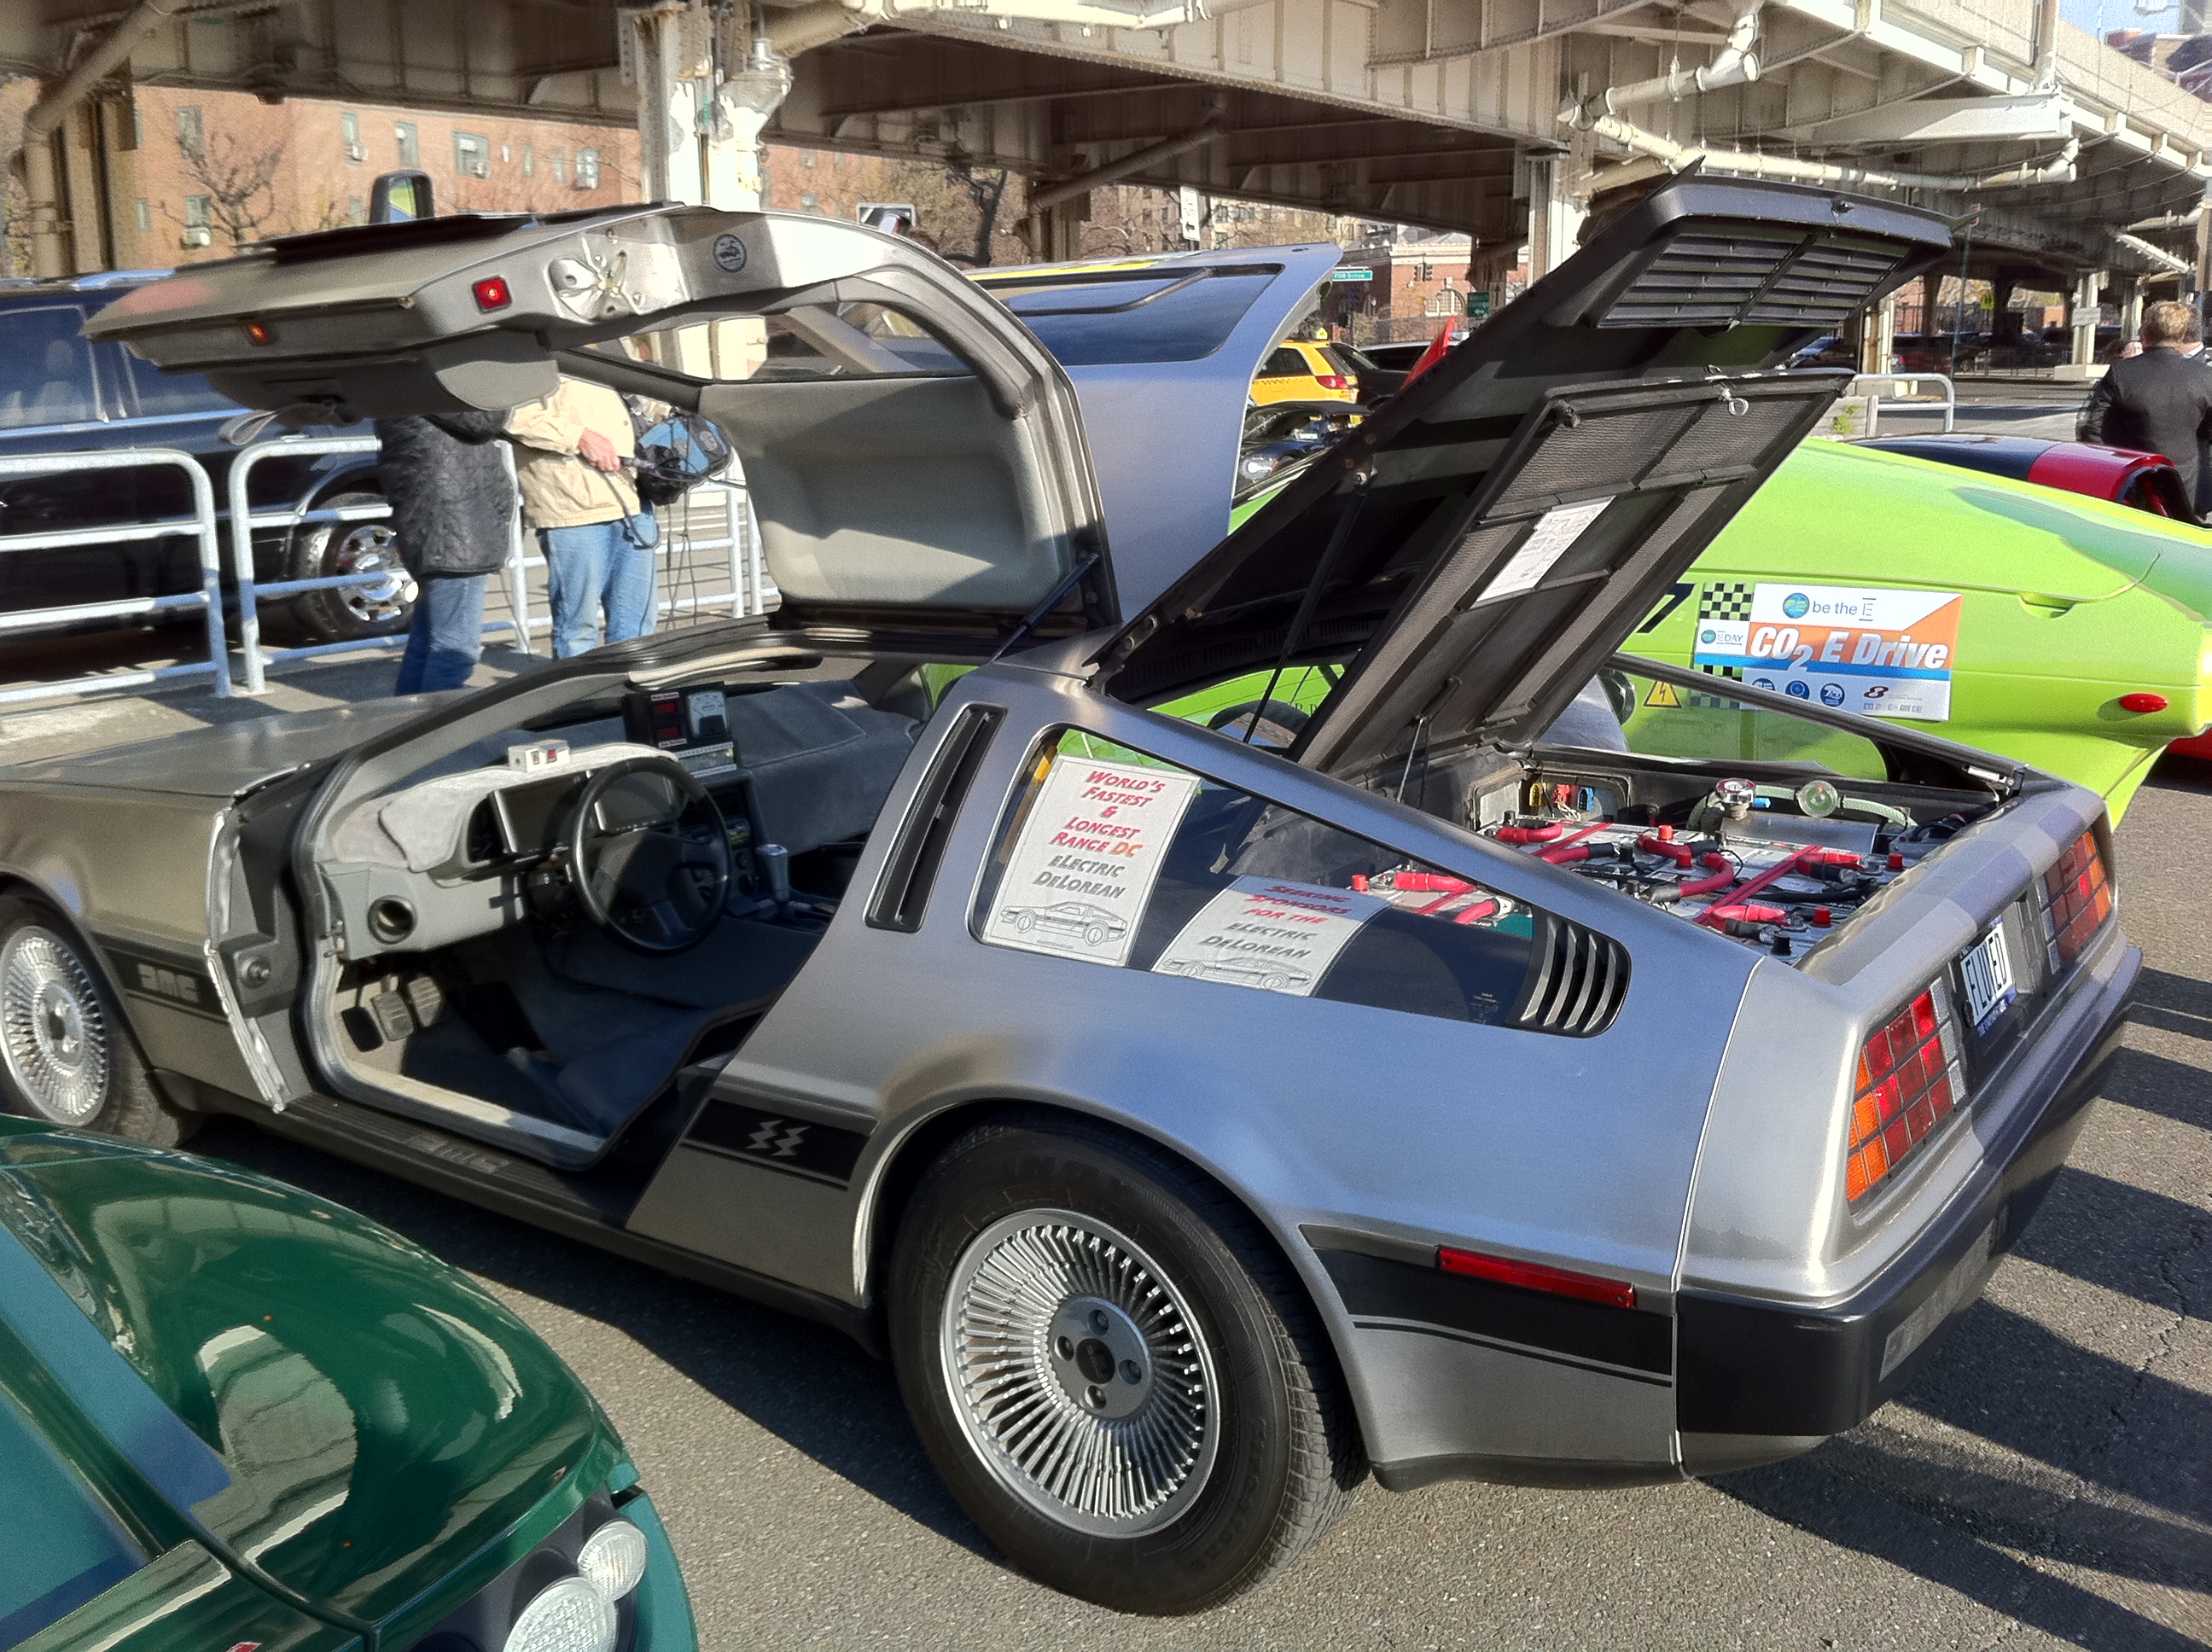 DeLorean EV conversion